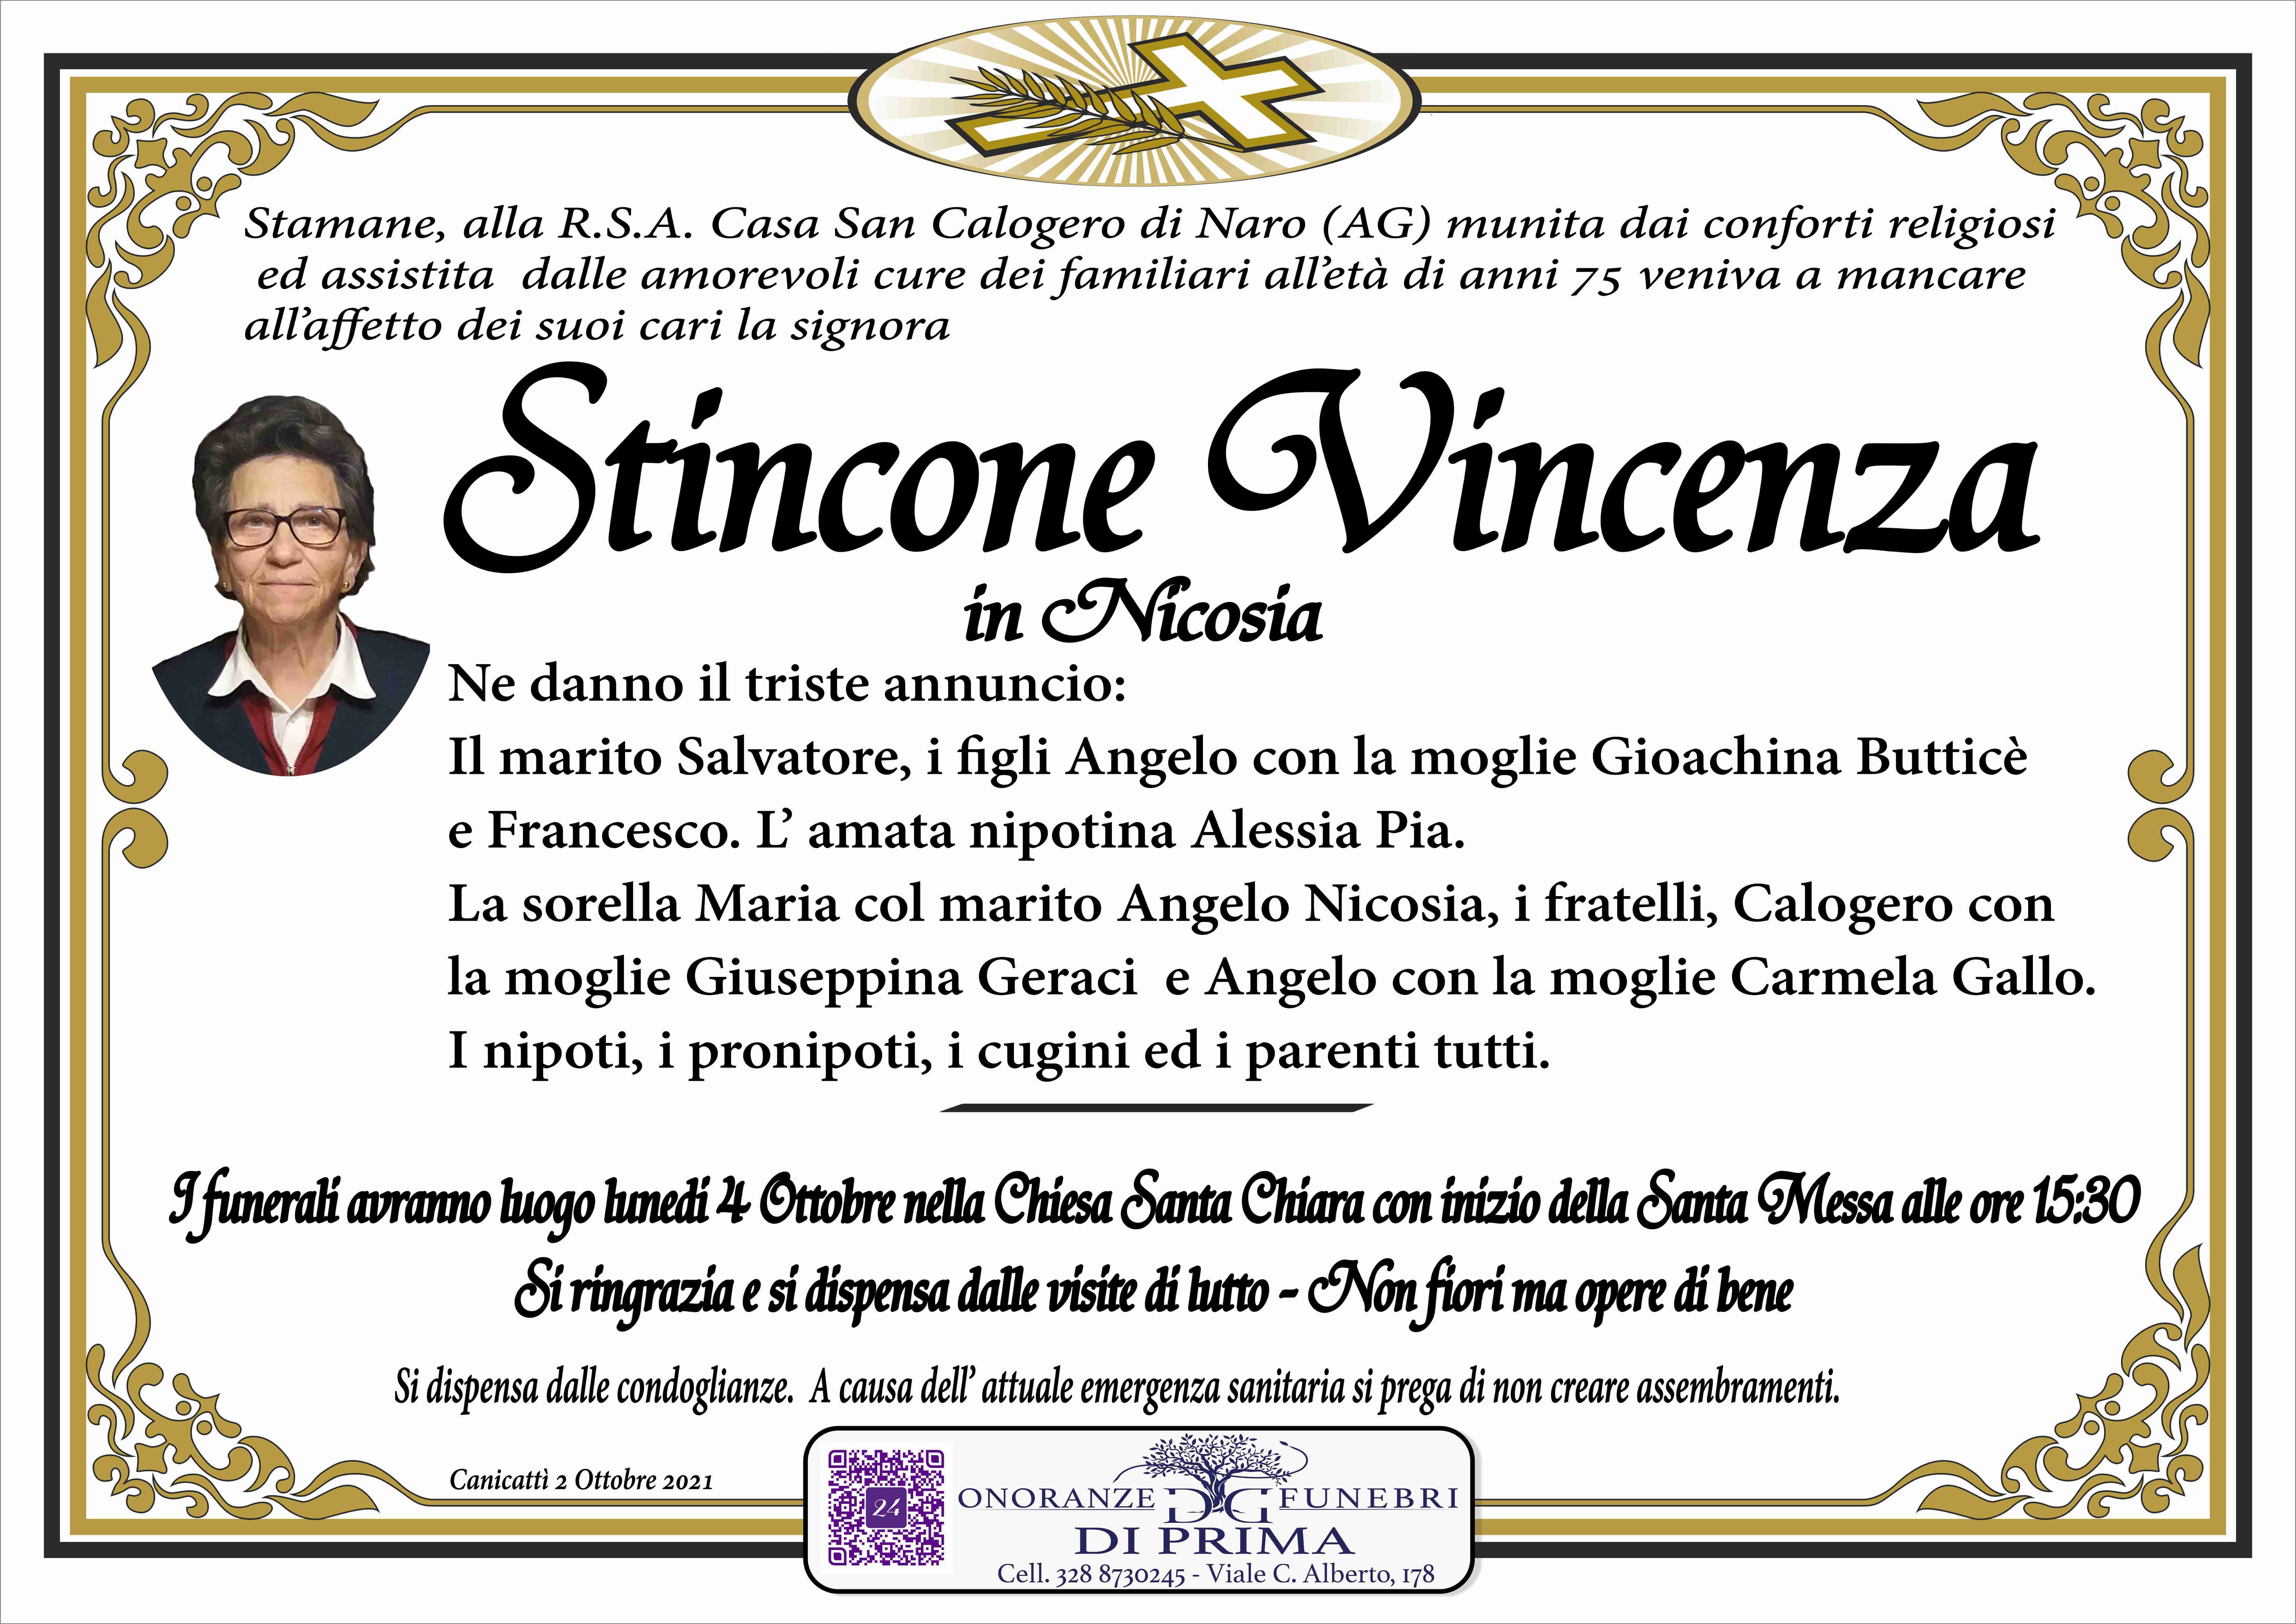 Vincenza Stincone